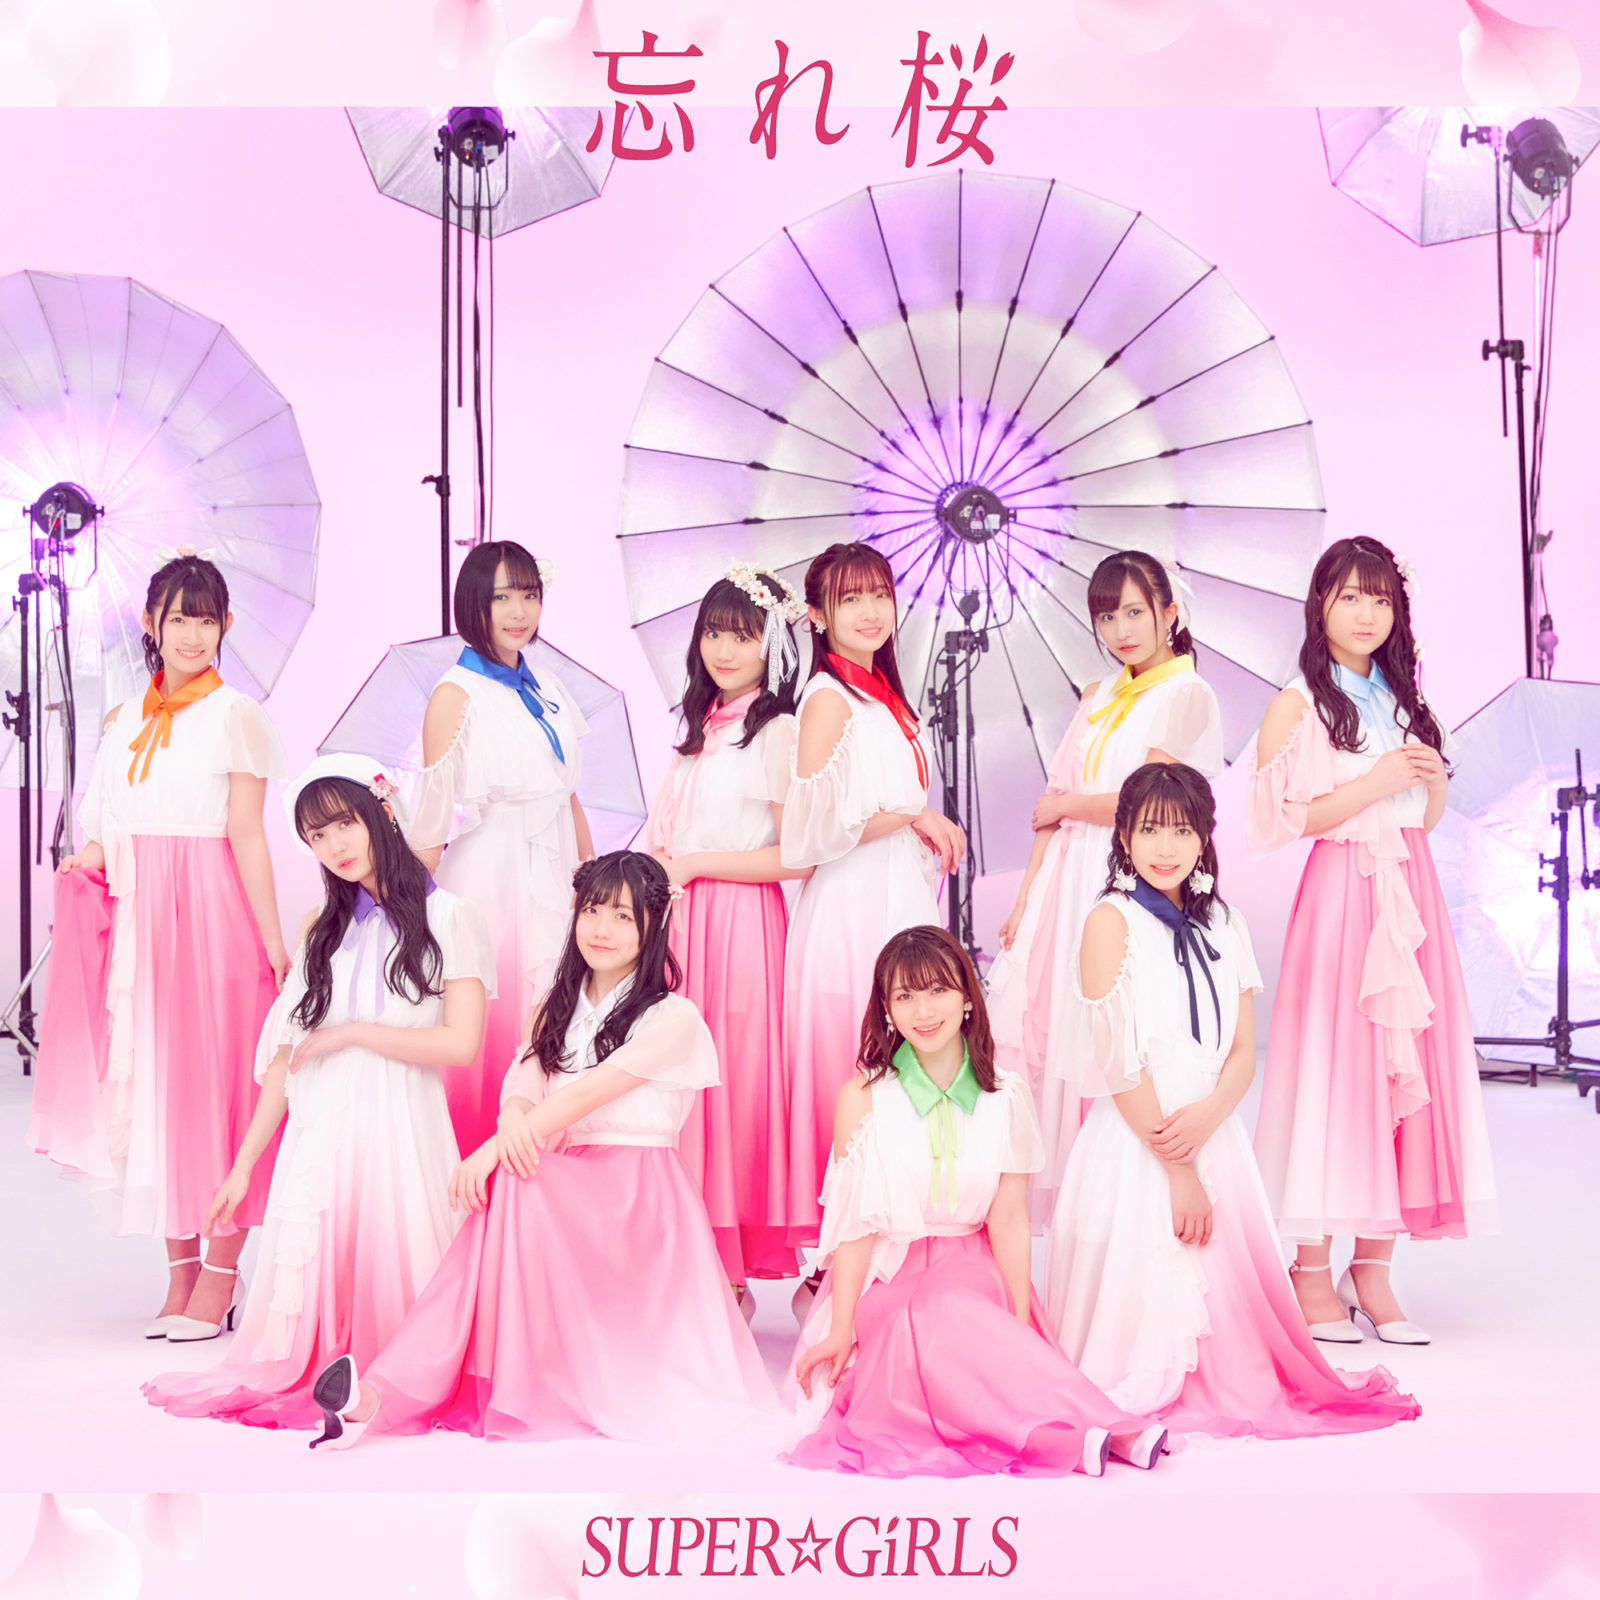 SUPER☆GiRLSの新曲「忘れ桜」がオリコンデイリーシングルランキング1位を獲得